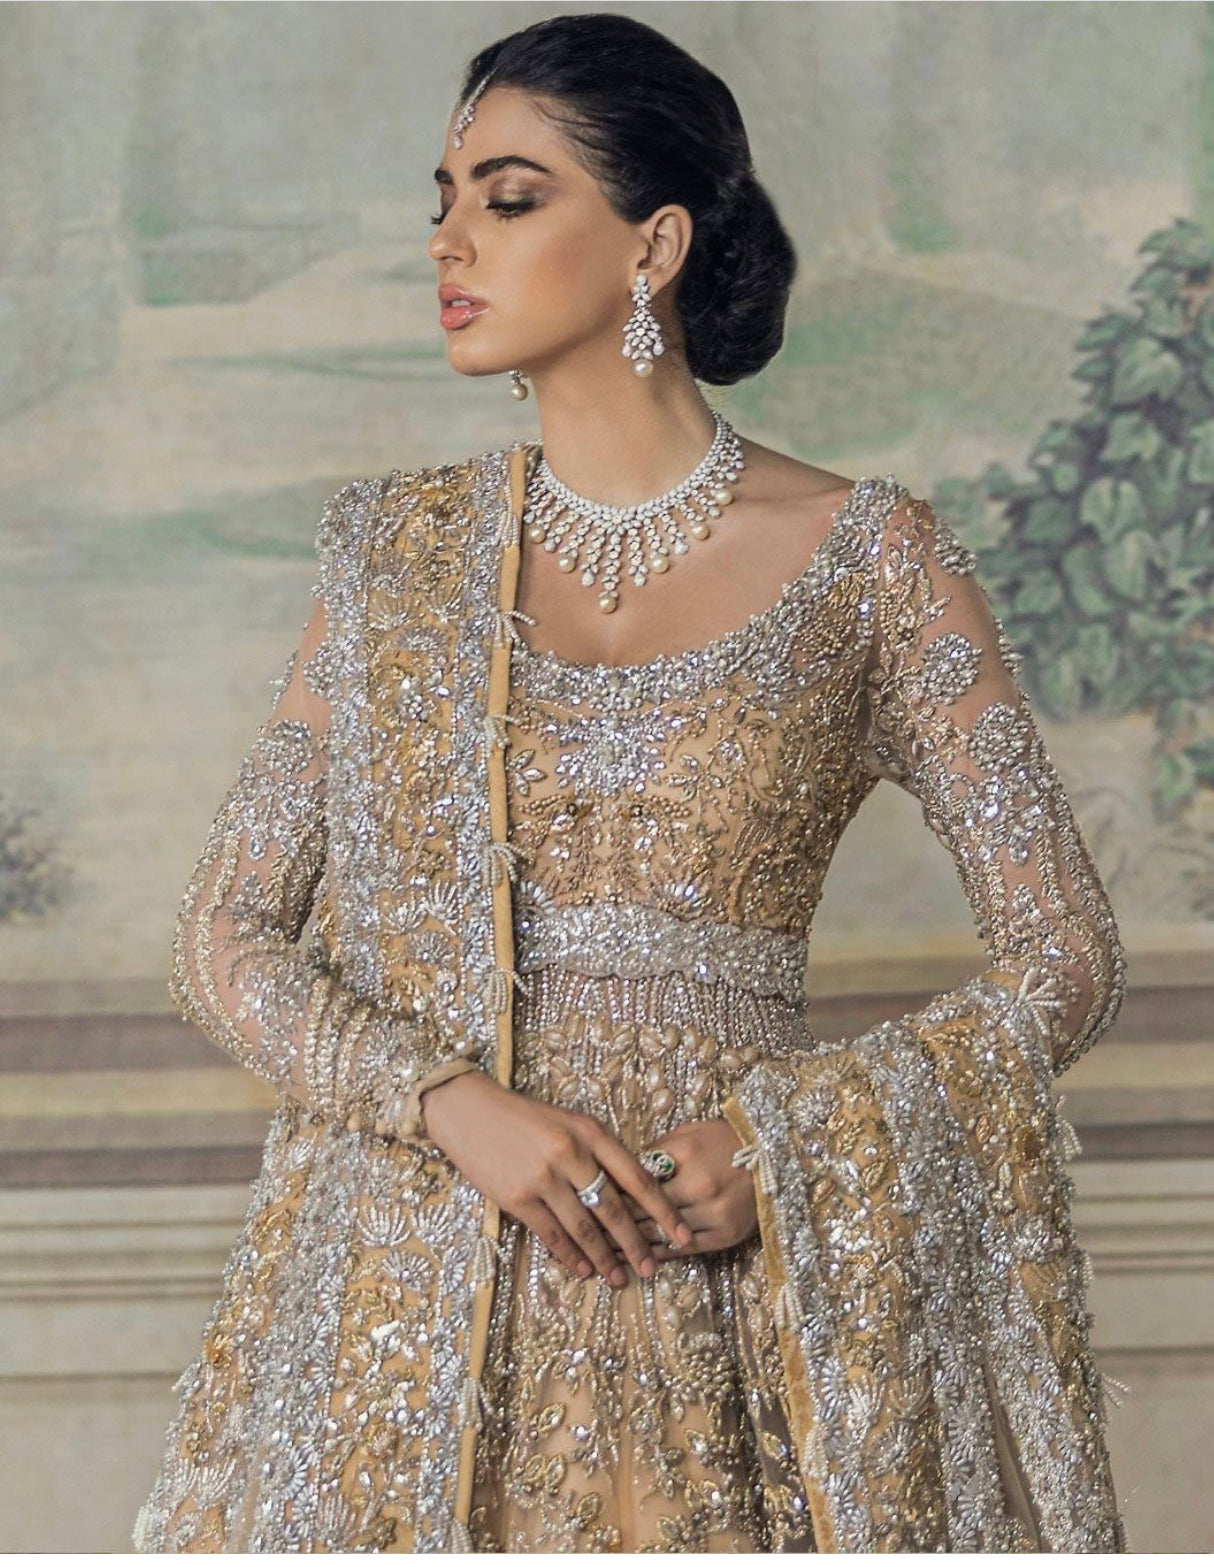 ELAN - INDIAN PAKISTANI BRIDAL DRESSES 2020/21